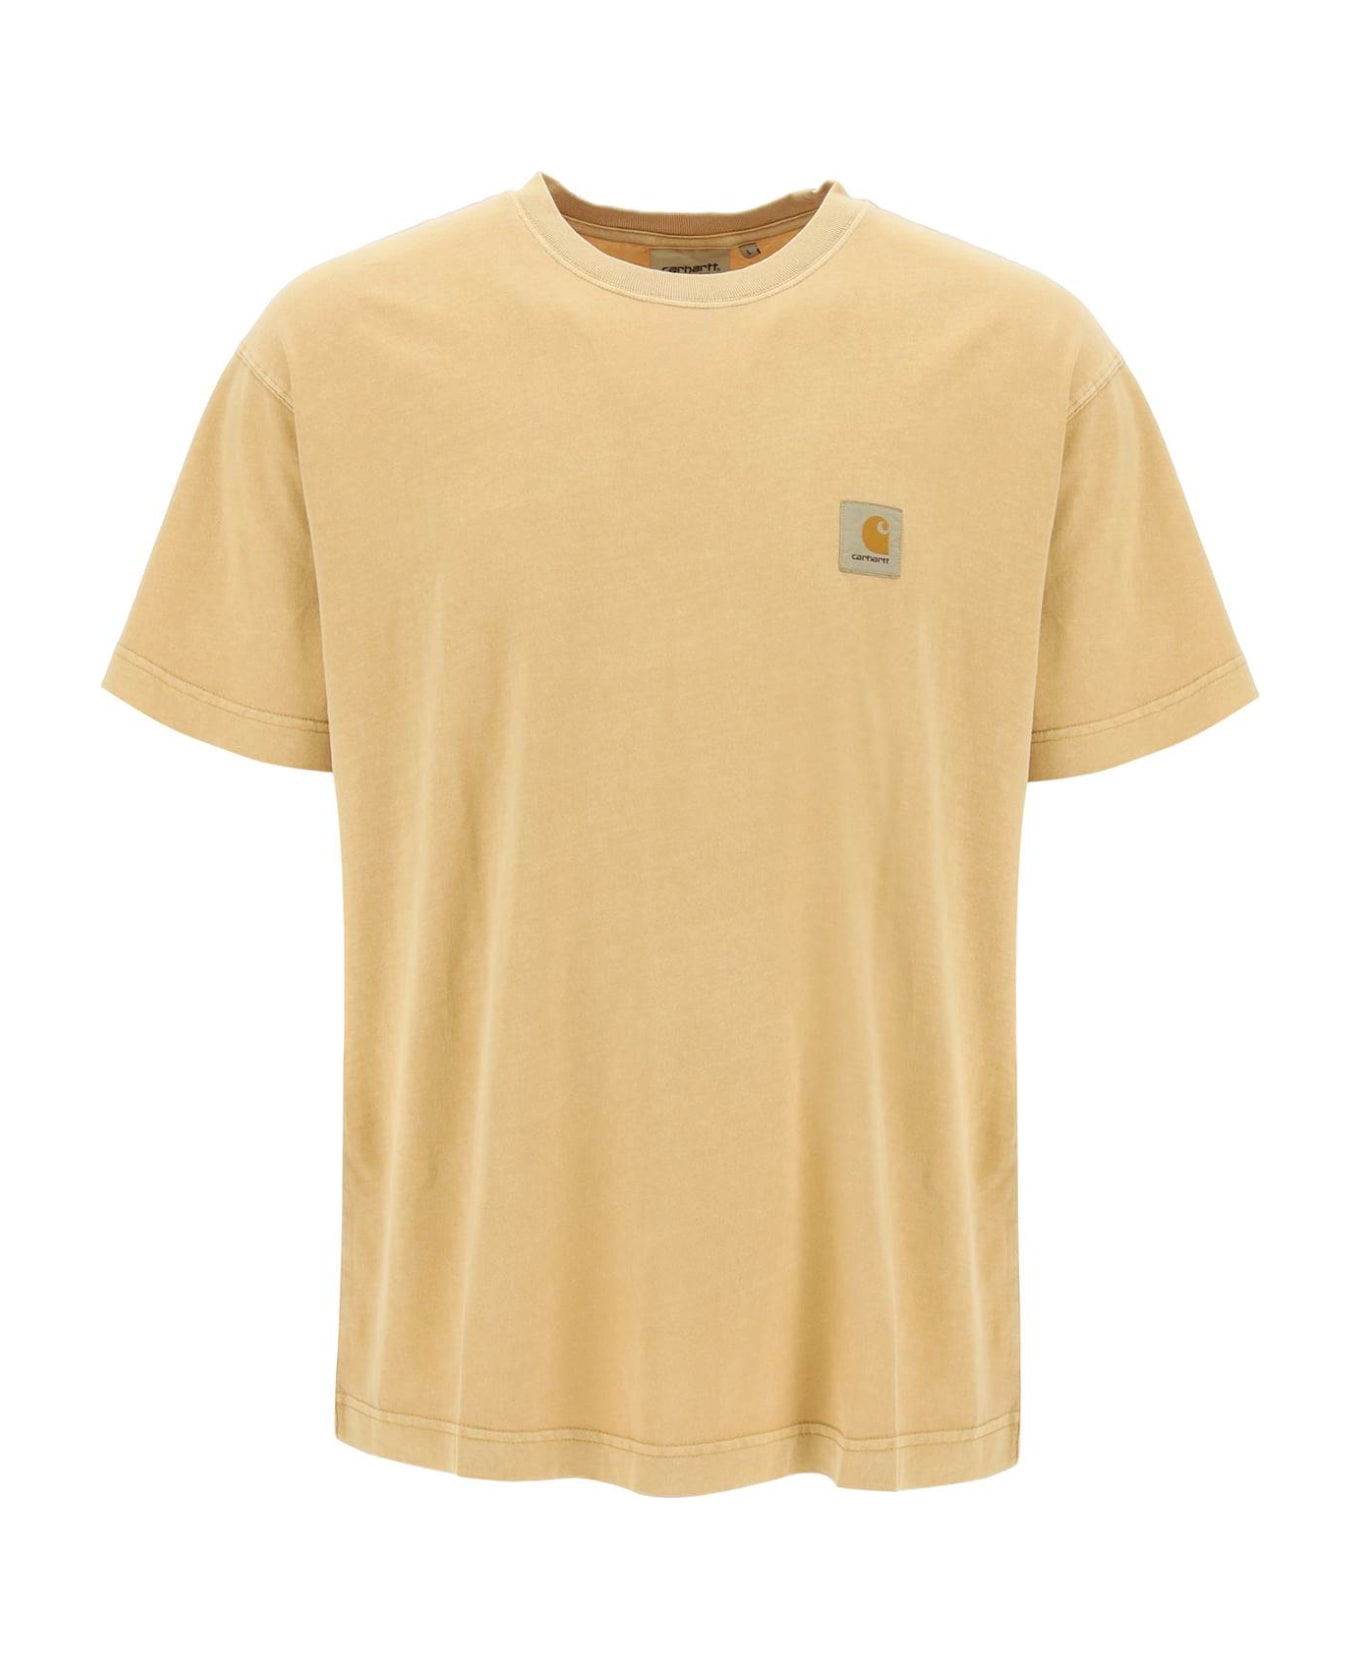 Carhartt Nelson T-shirt - Yhgd Bourbon Garment Dyed